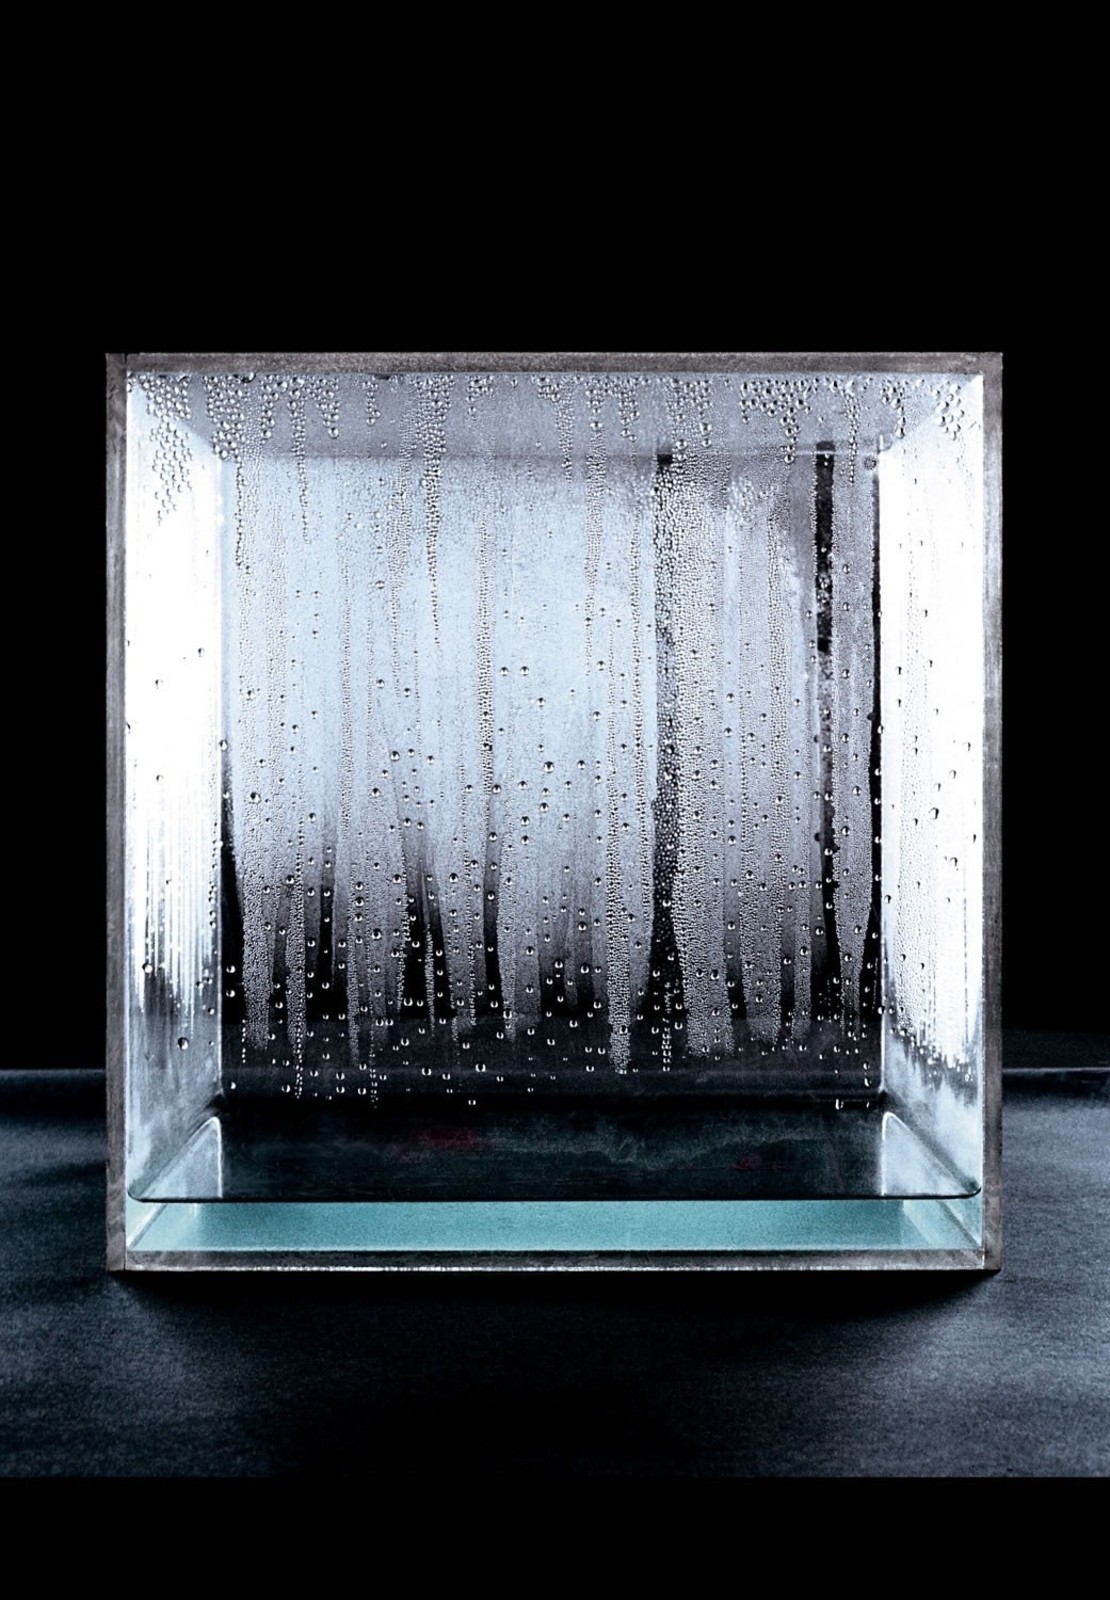 Ханс Хааке  Конденсационный куб. 1963–1965  Плексиглас, вода. 76 x 76 х 76 см  Музей современного искусства, Барселона, Испания